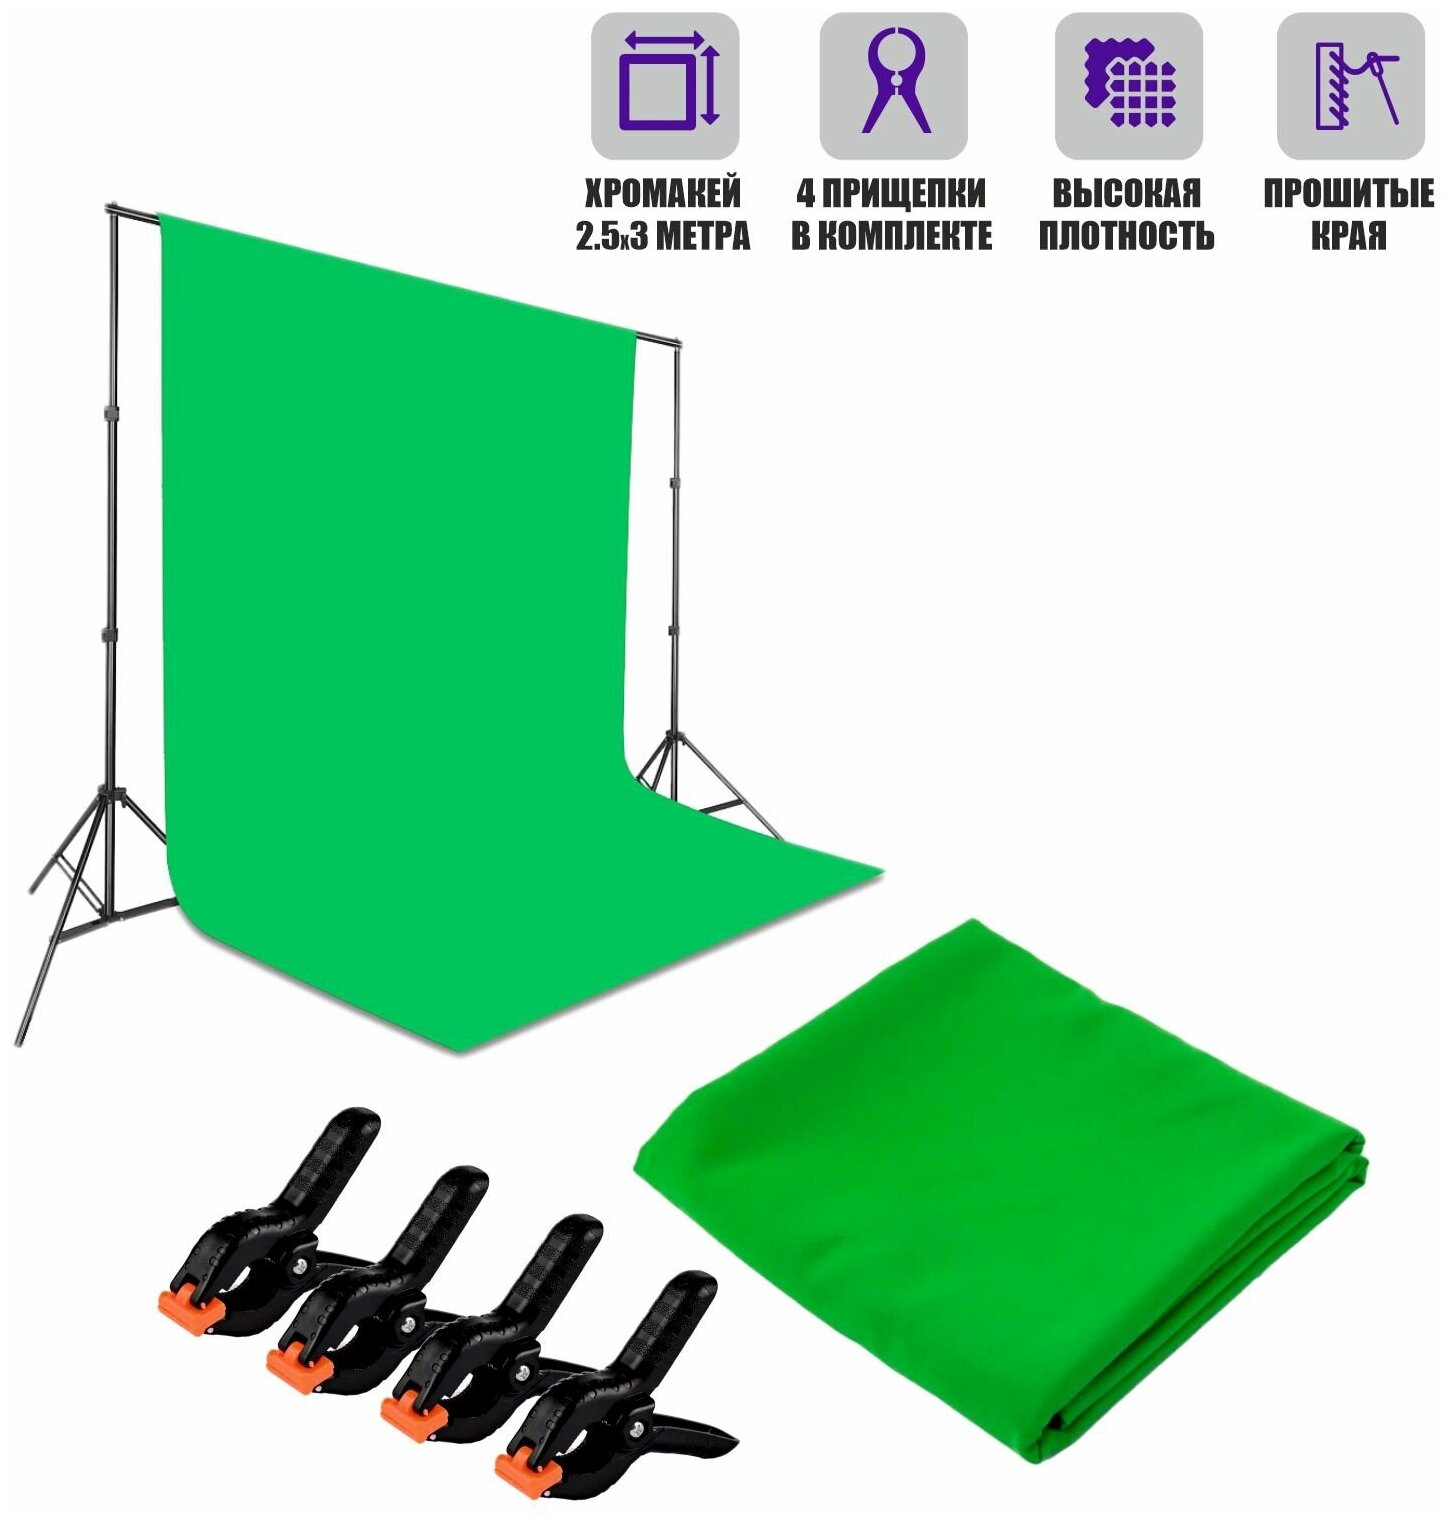 Фон хромакей тканевый для фотостудии 2.5x3 м в комплекте c прищепками 4 шт.